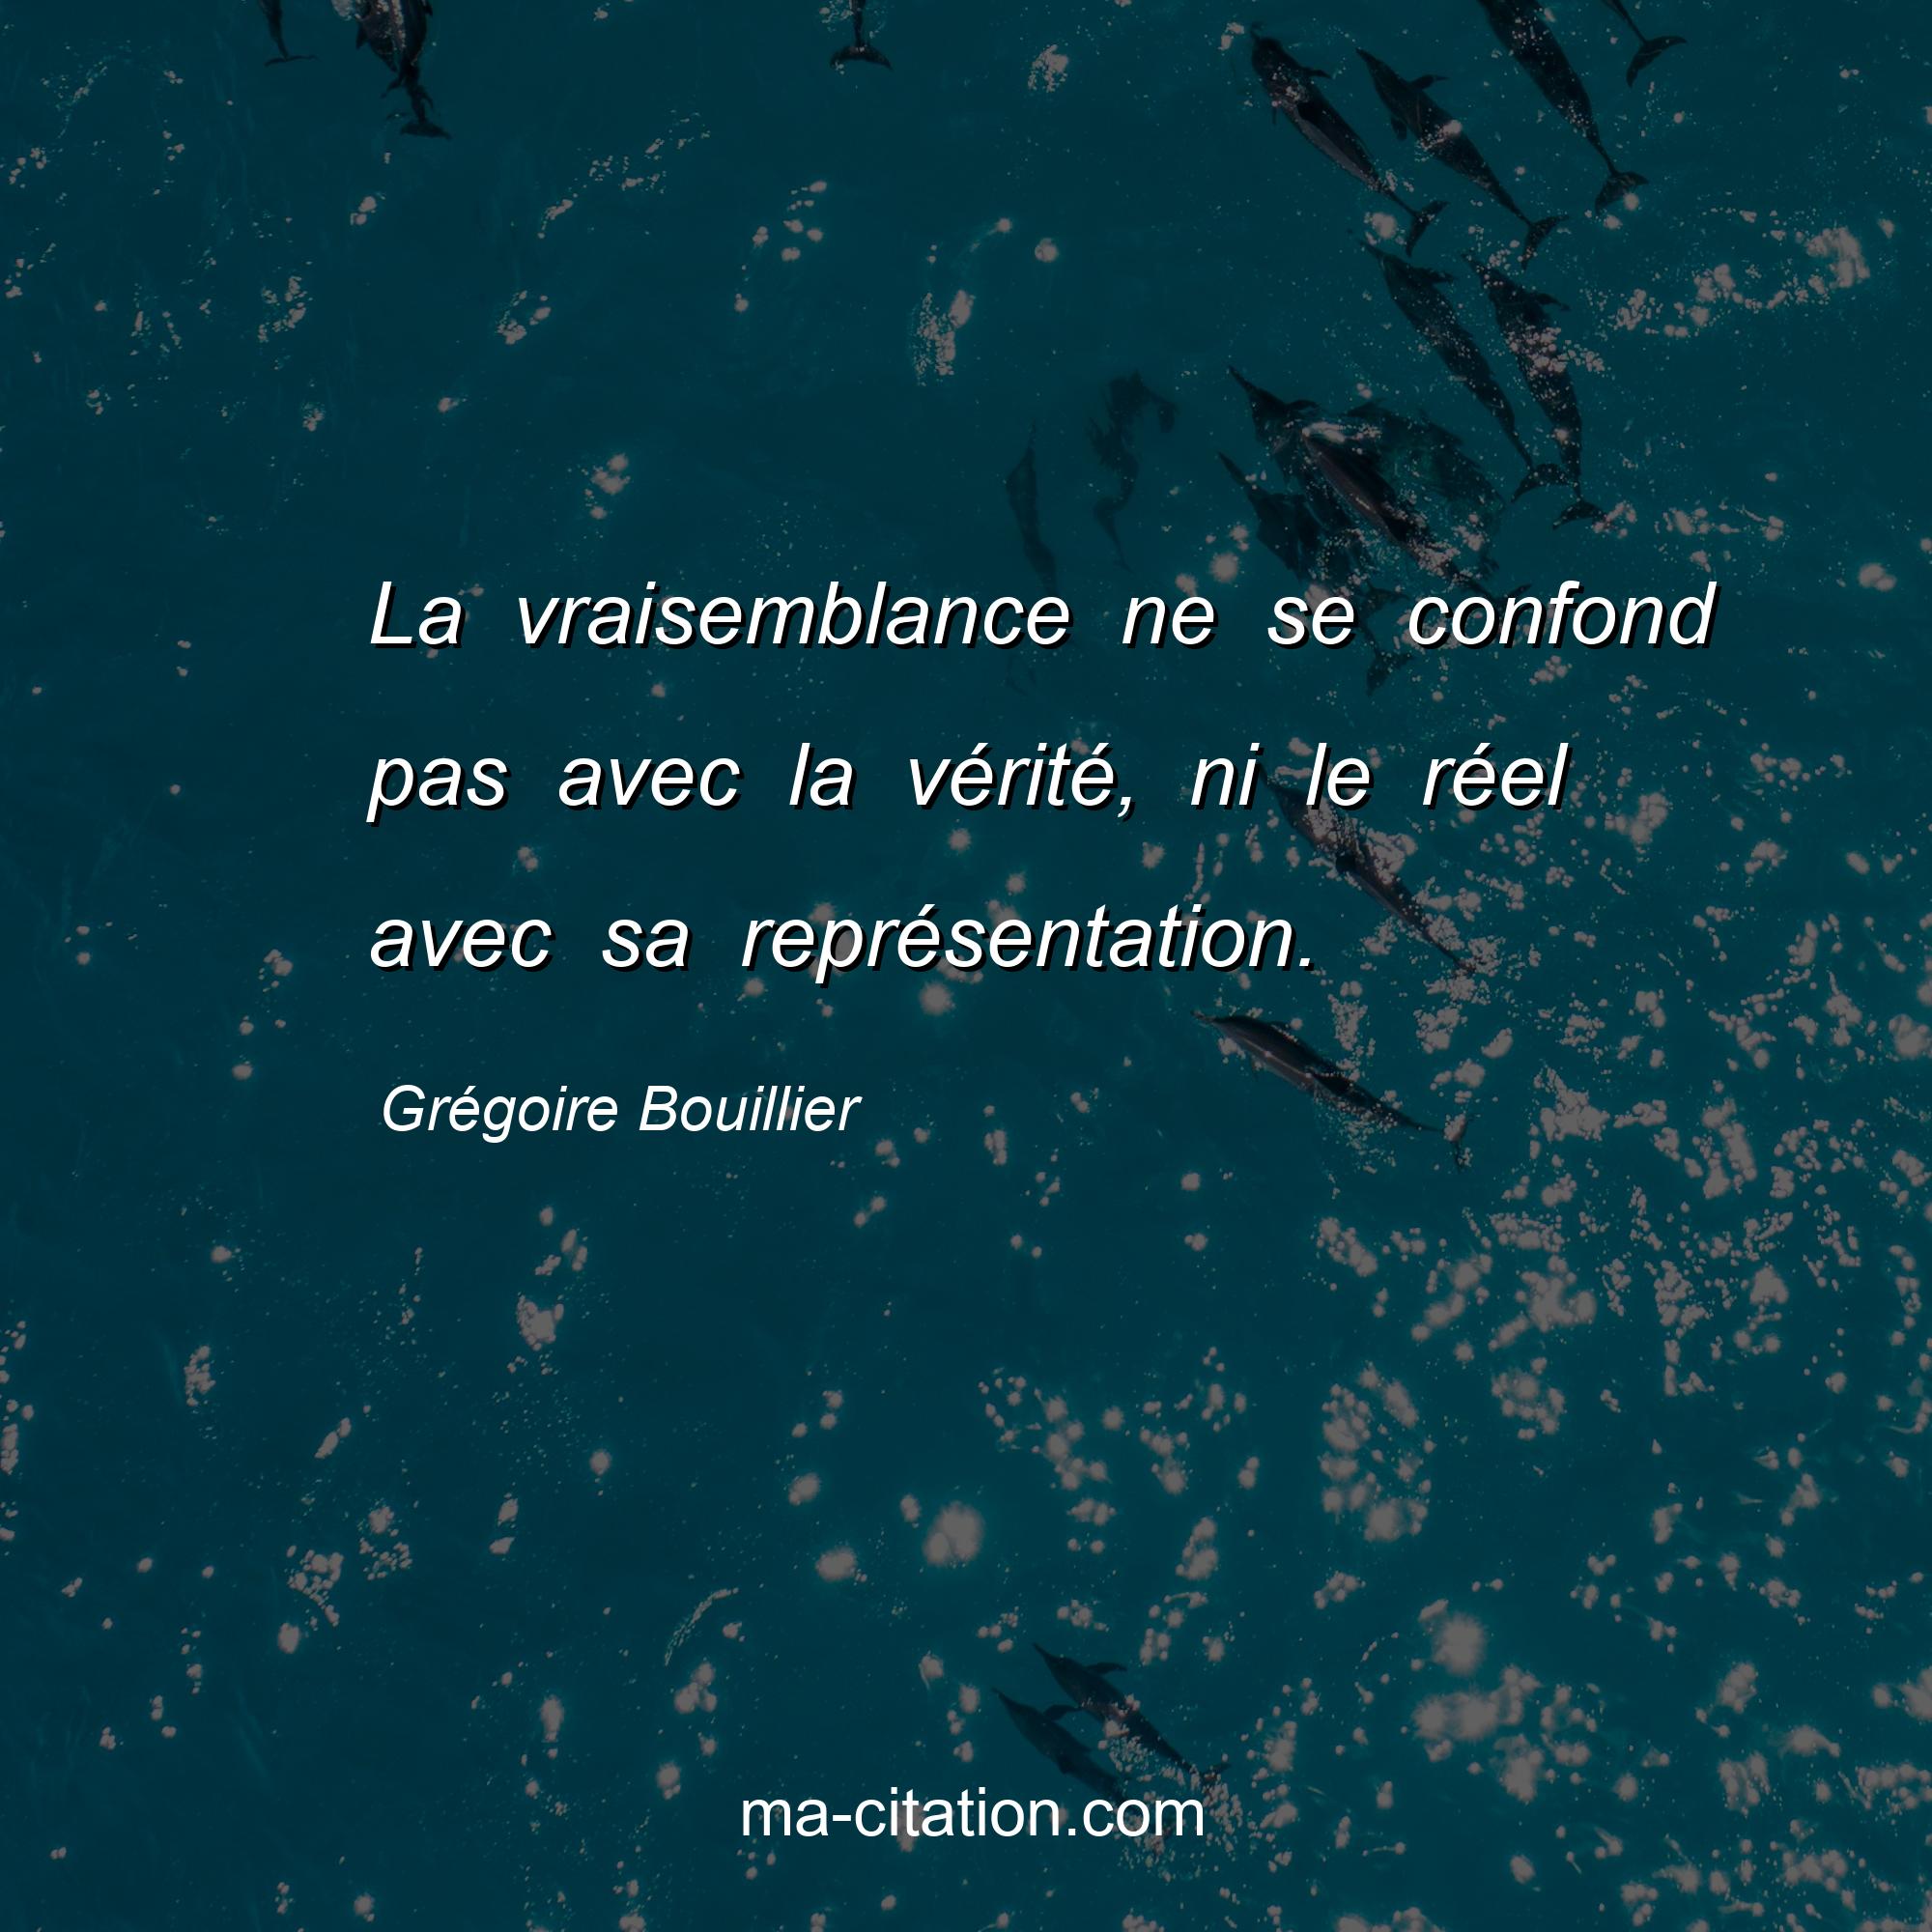 Grégoire Bouillier : La vraisemblance ne se confond pas avec la vérité, ni le réel avec sa représentation.